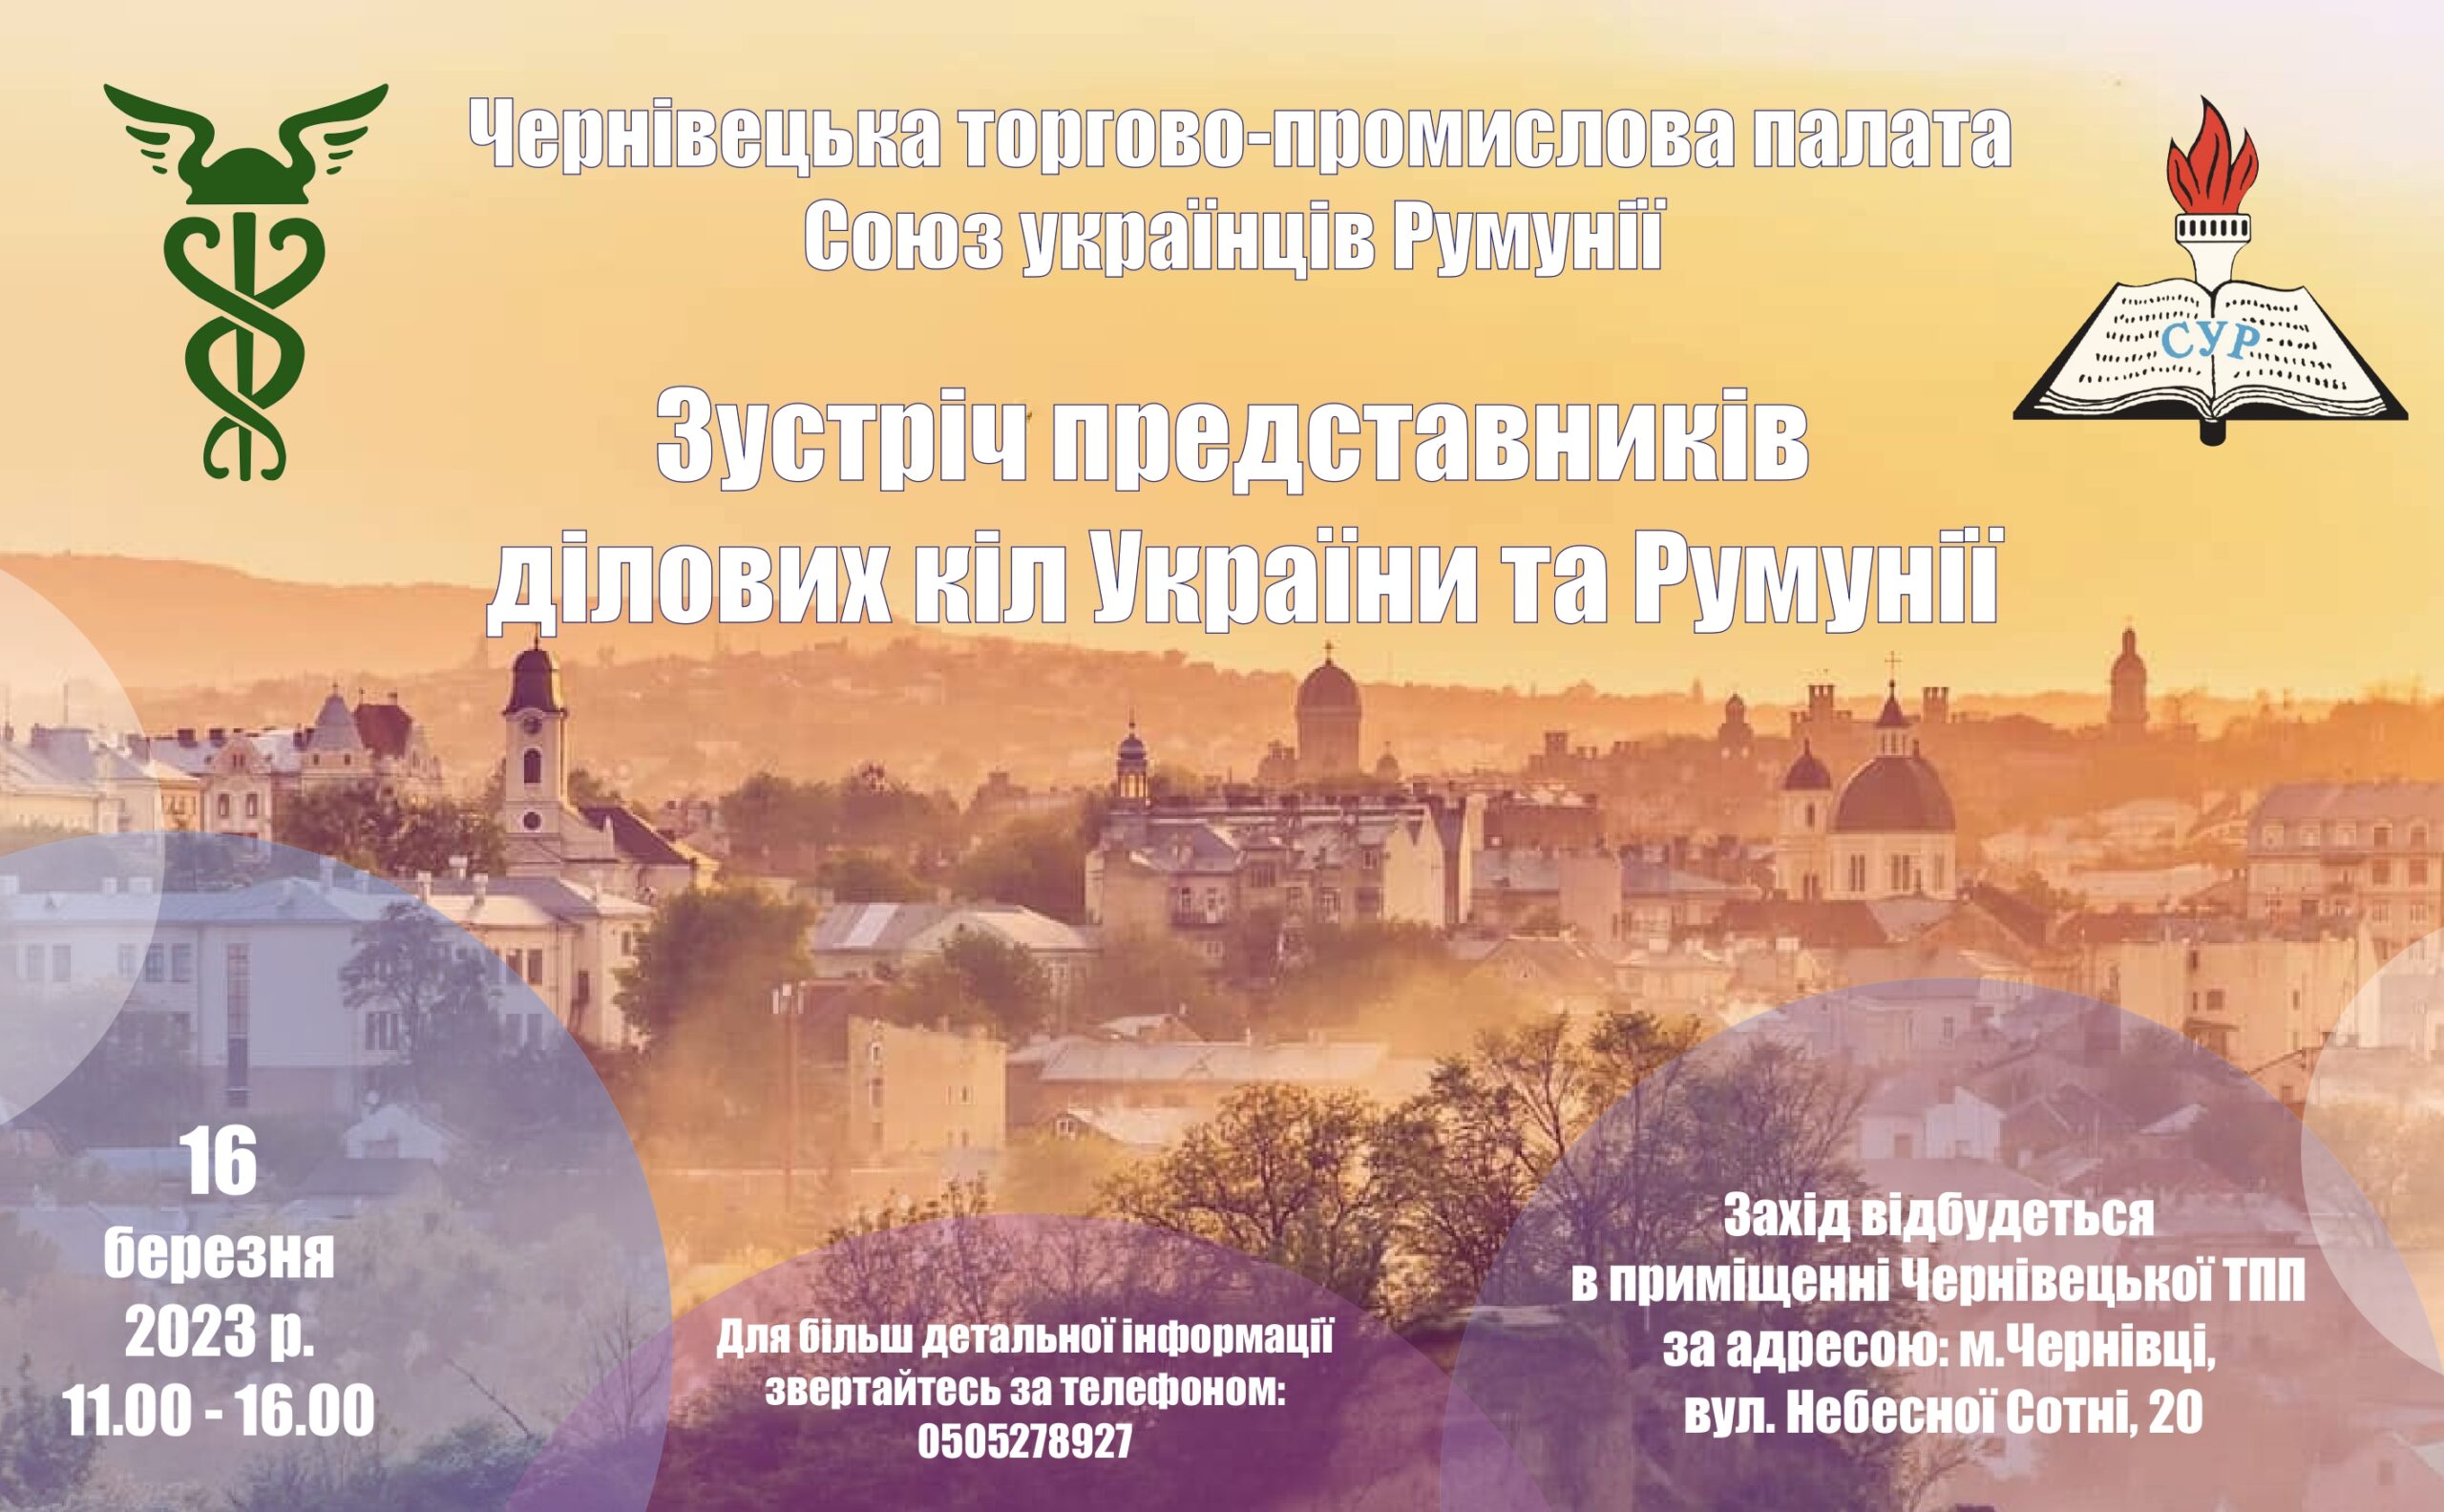 16 березня 2023 року в Чернівцях відбудеться зустріч представників ділових кіл України та Румунії